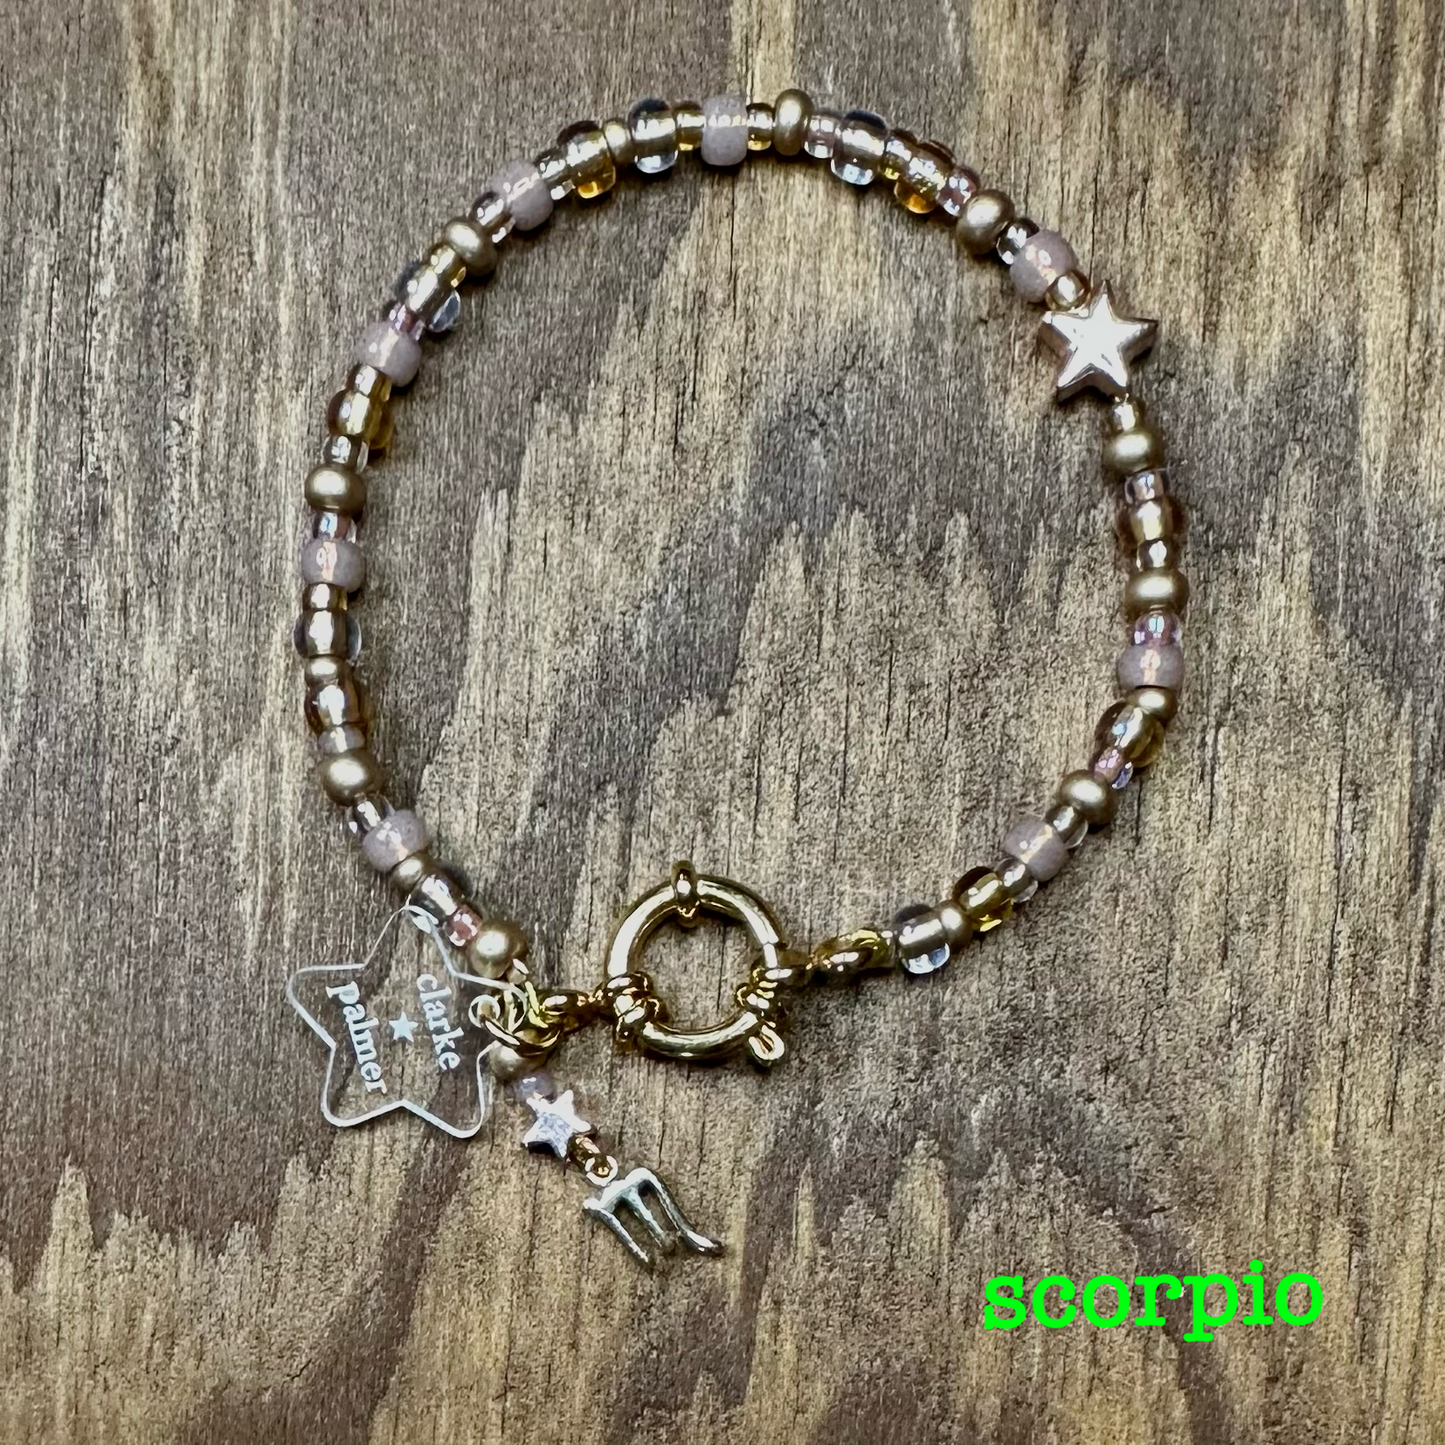 Golden Star Horoscope Charm Bracelet